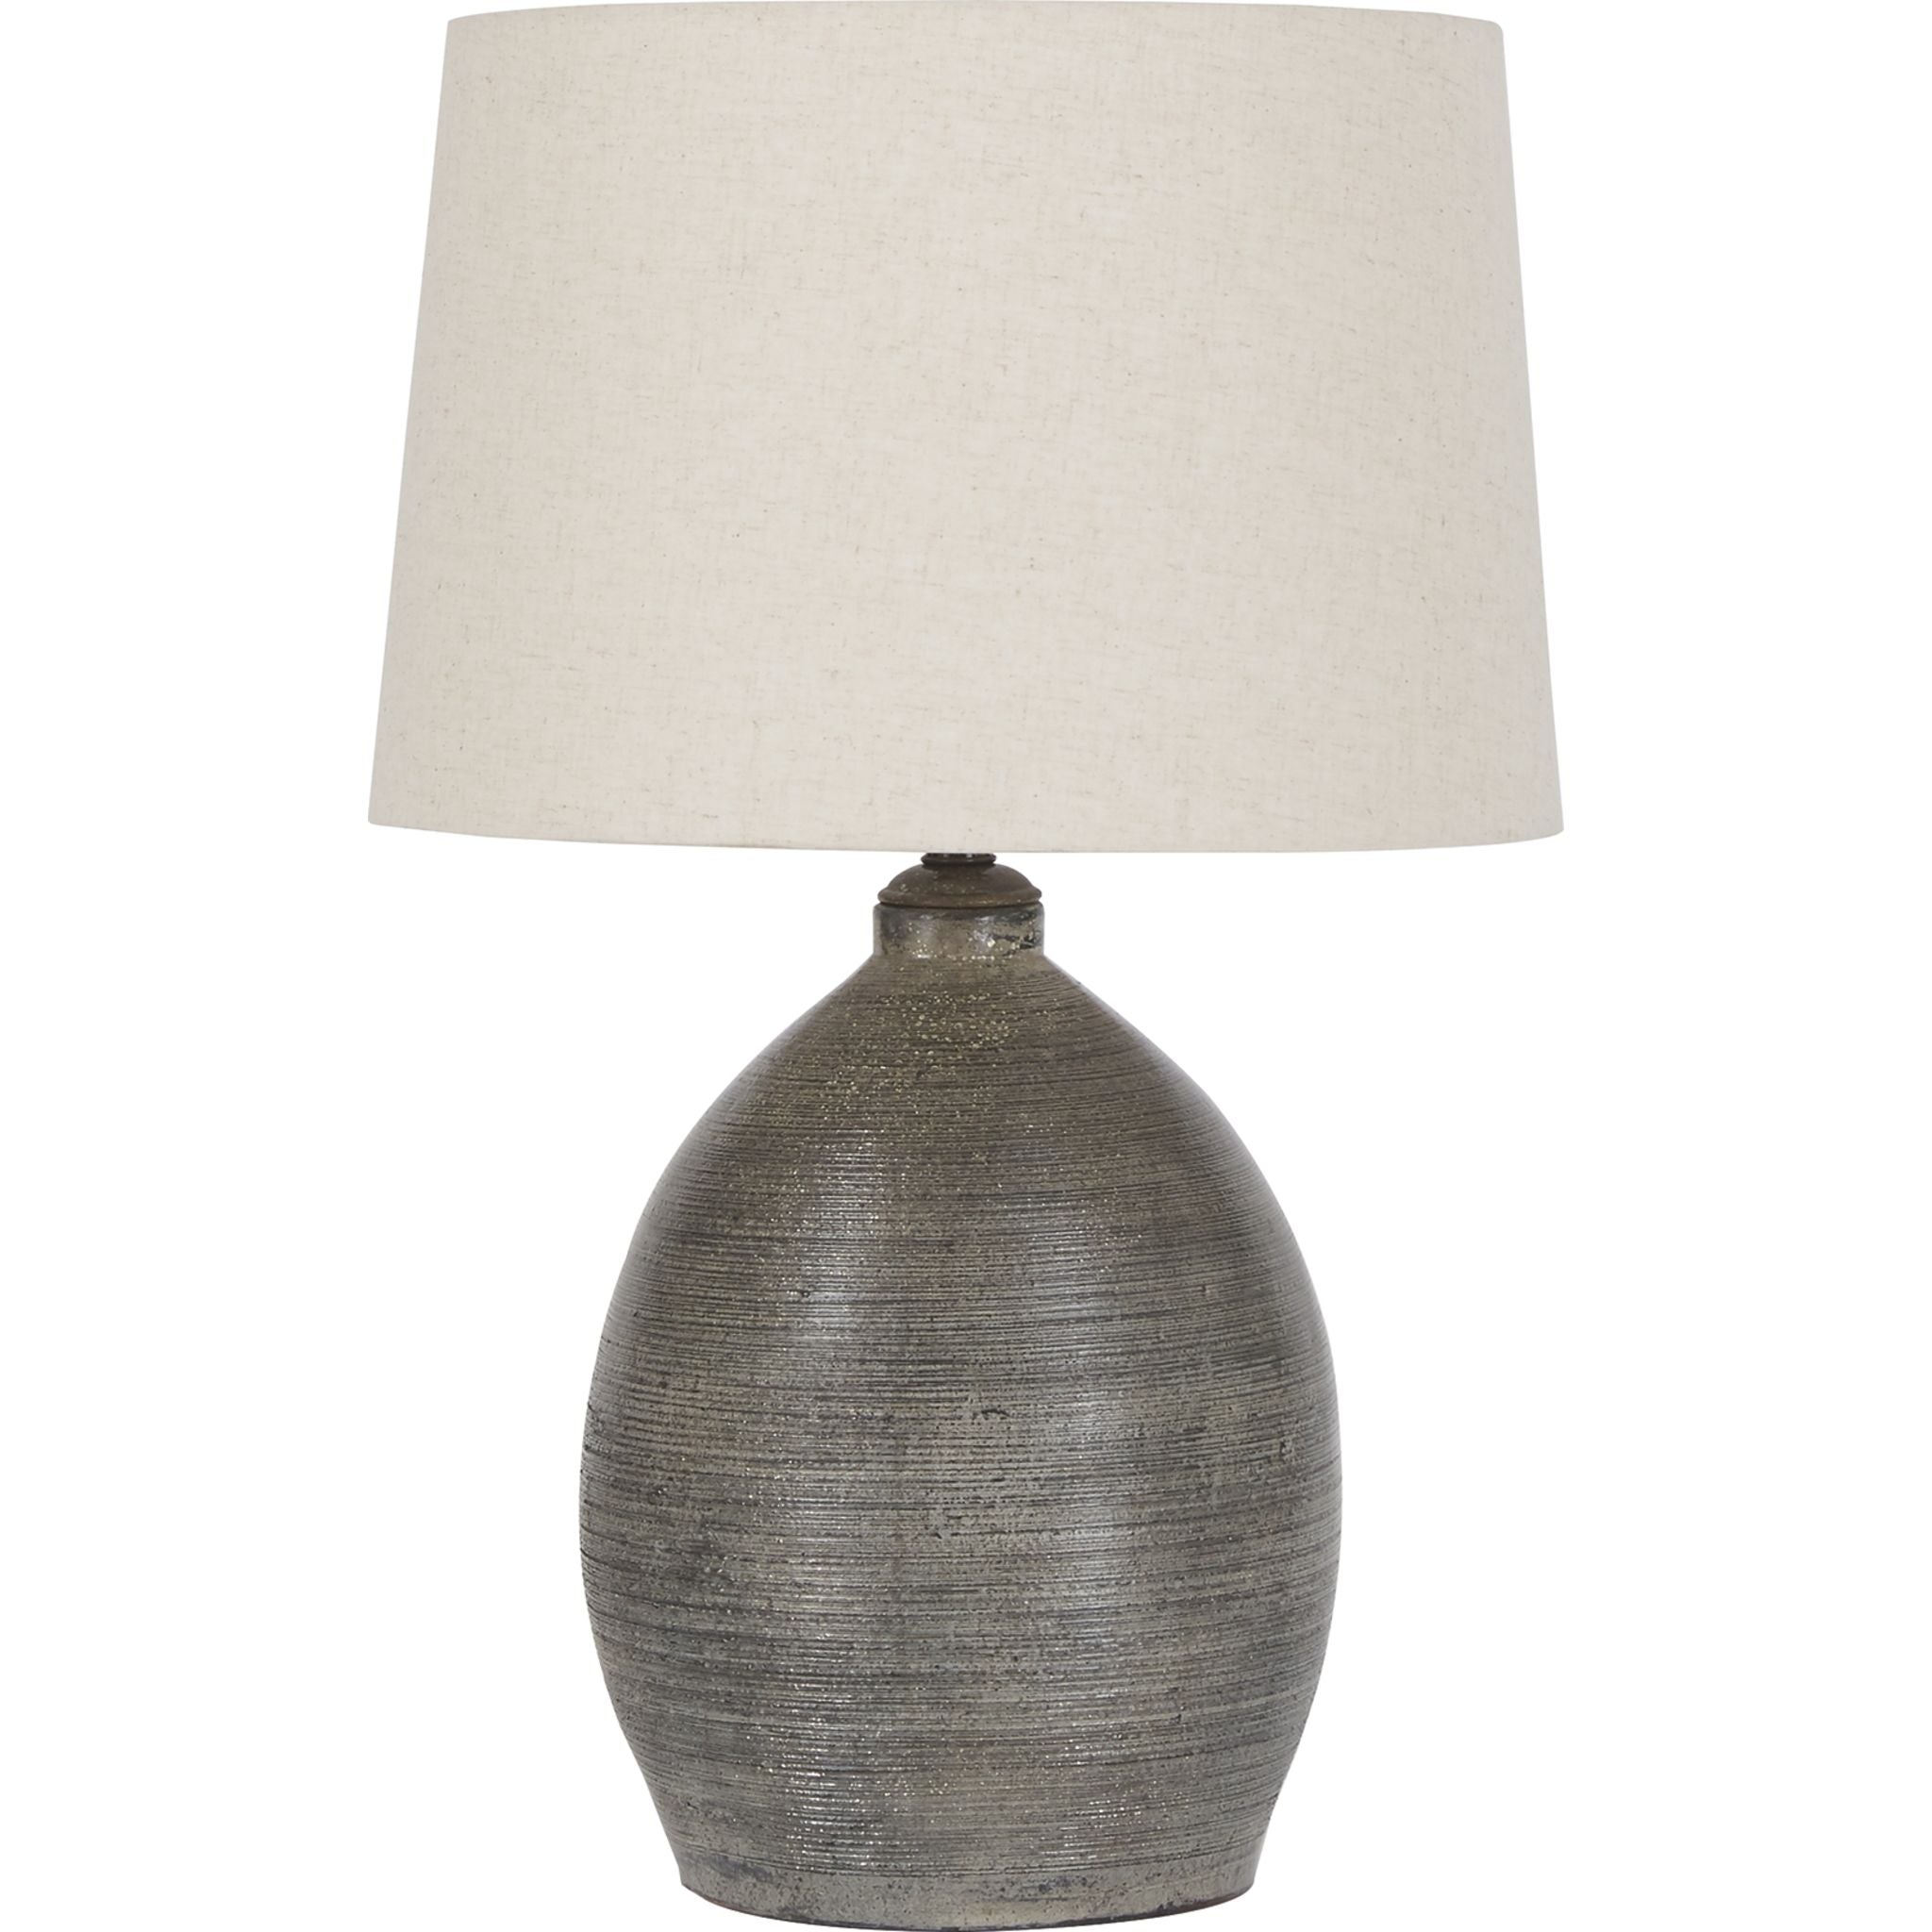 Ashley Joyelle Table Lamp In Grey, Size: 27.50"